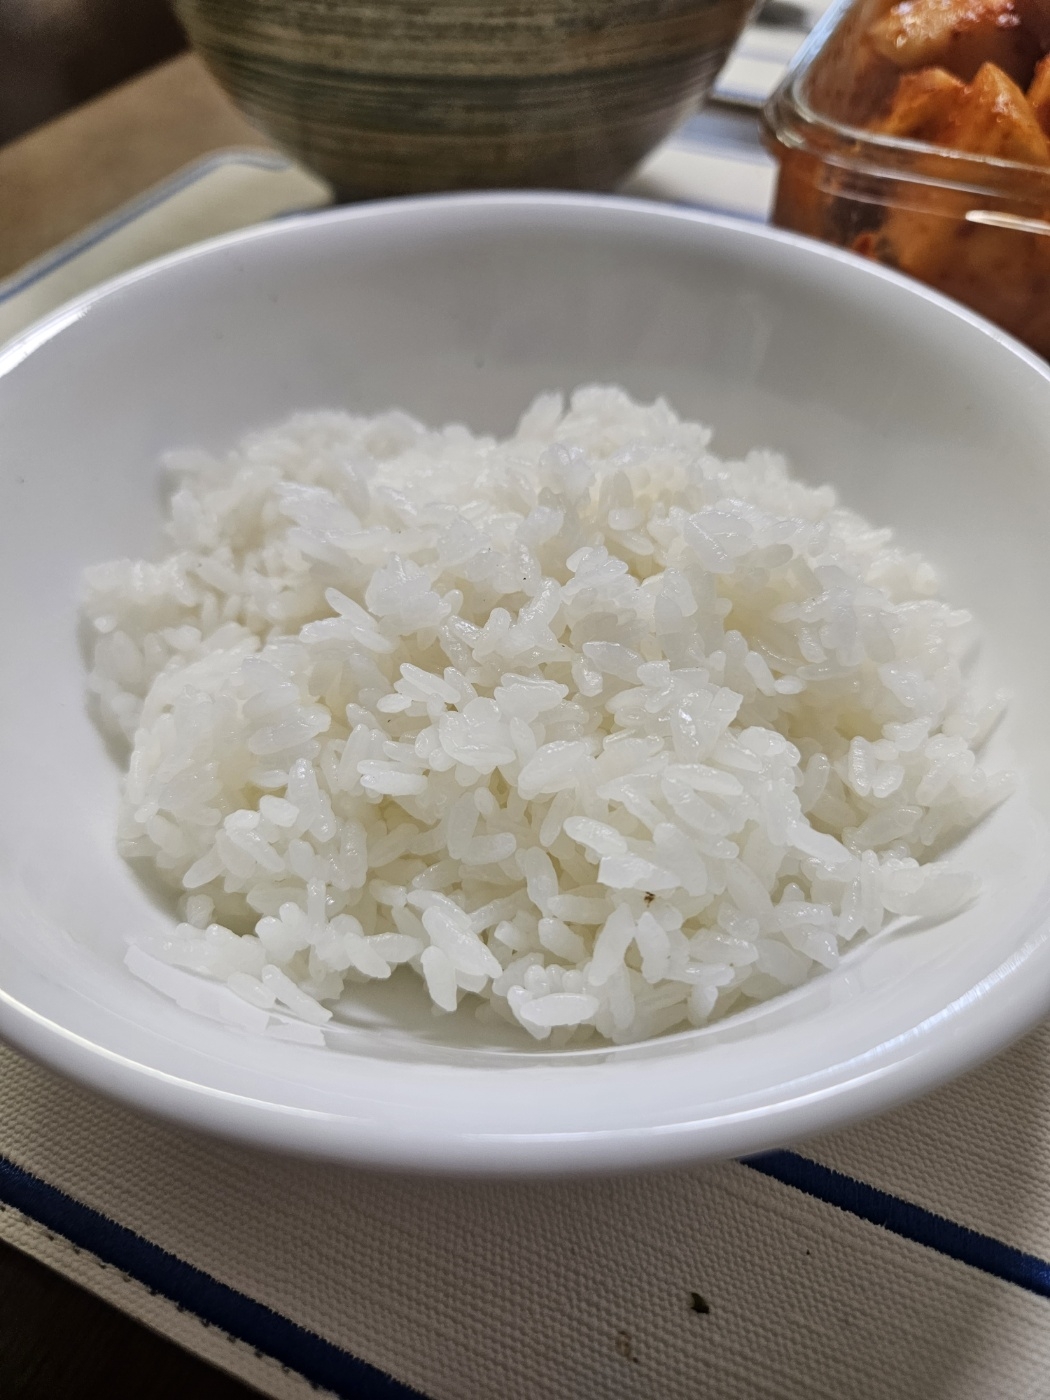 (함평군농협) GAP인증 2023년 고품질브랜드 나비쌀 10kg